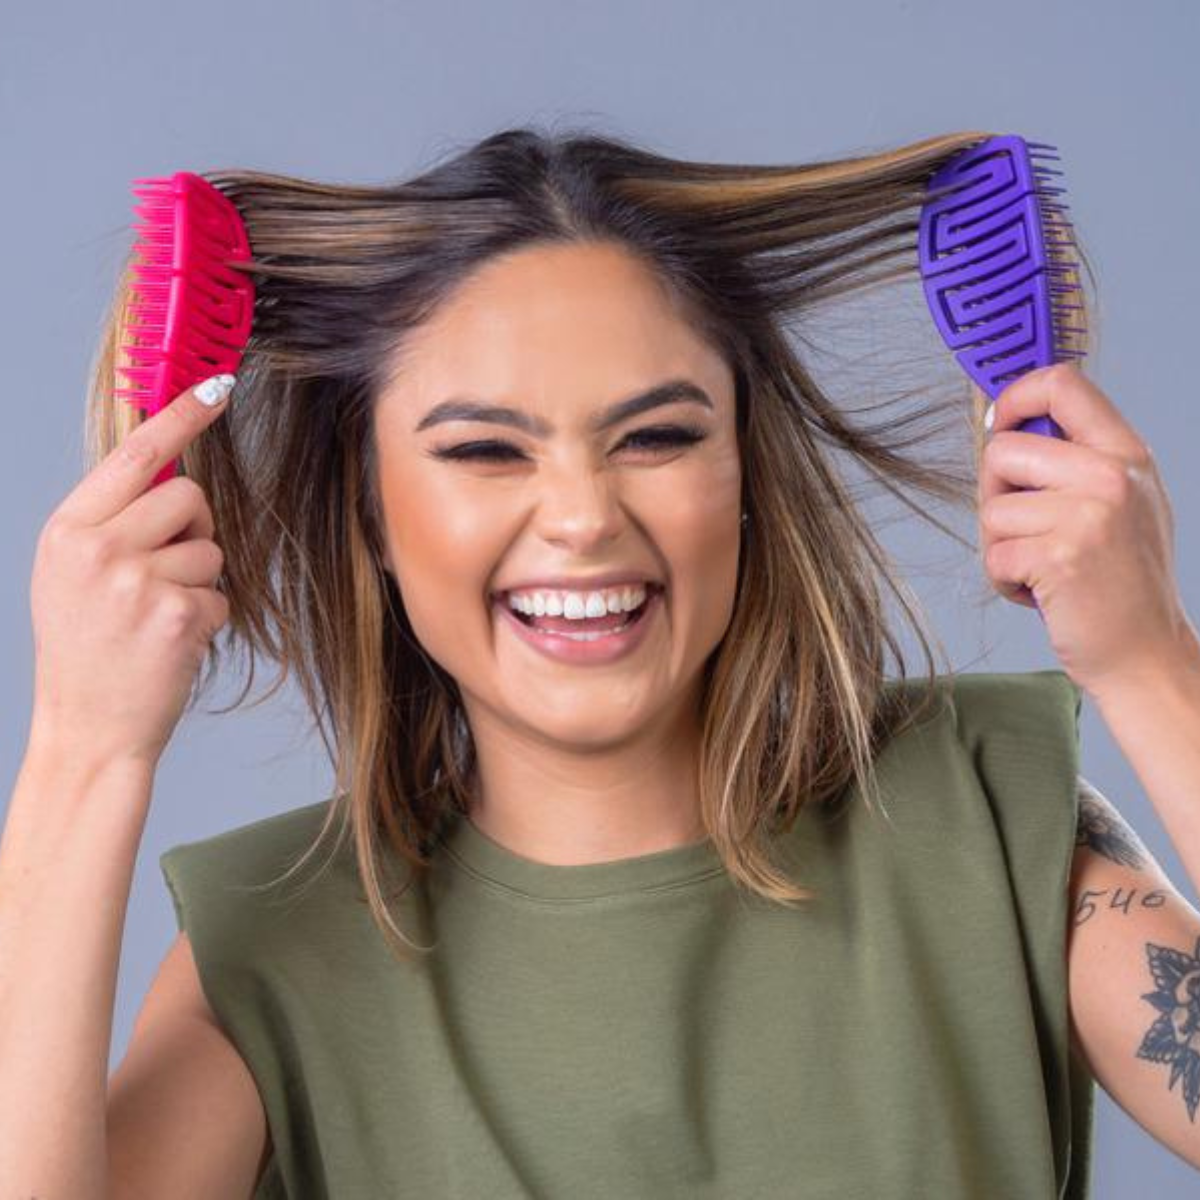 Juego de cepillos para el cabello Dompel Maya - Juego de 4 piezas (verde, rosa, púrpura, negro) - Cepillo antiestático para todo tipo de cabello.